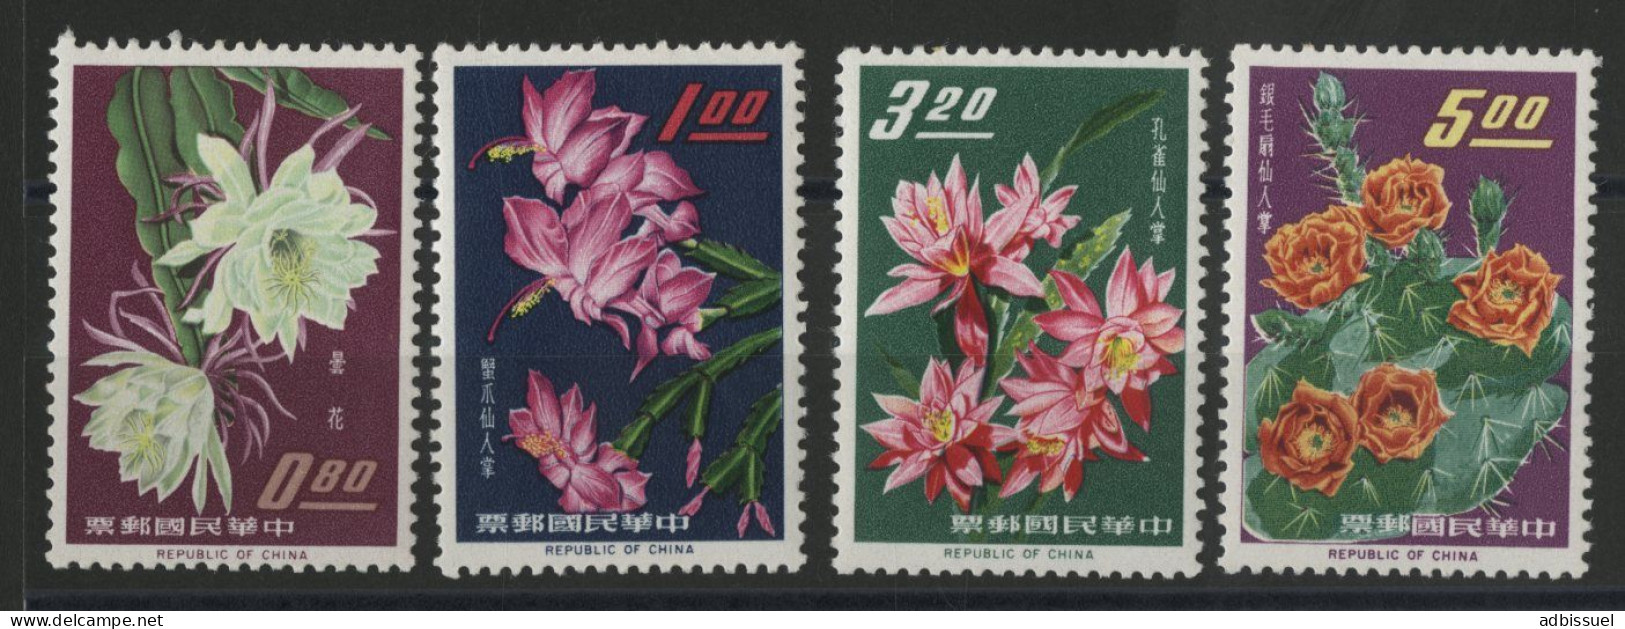 TAIWAN REPUBLIC OF CHINA Bloc N° 455 à 458 Neuf ** (MNH) FLEURS FLOWERS Qualité TB - Ungebraucht